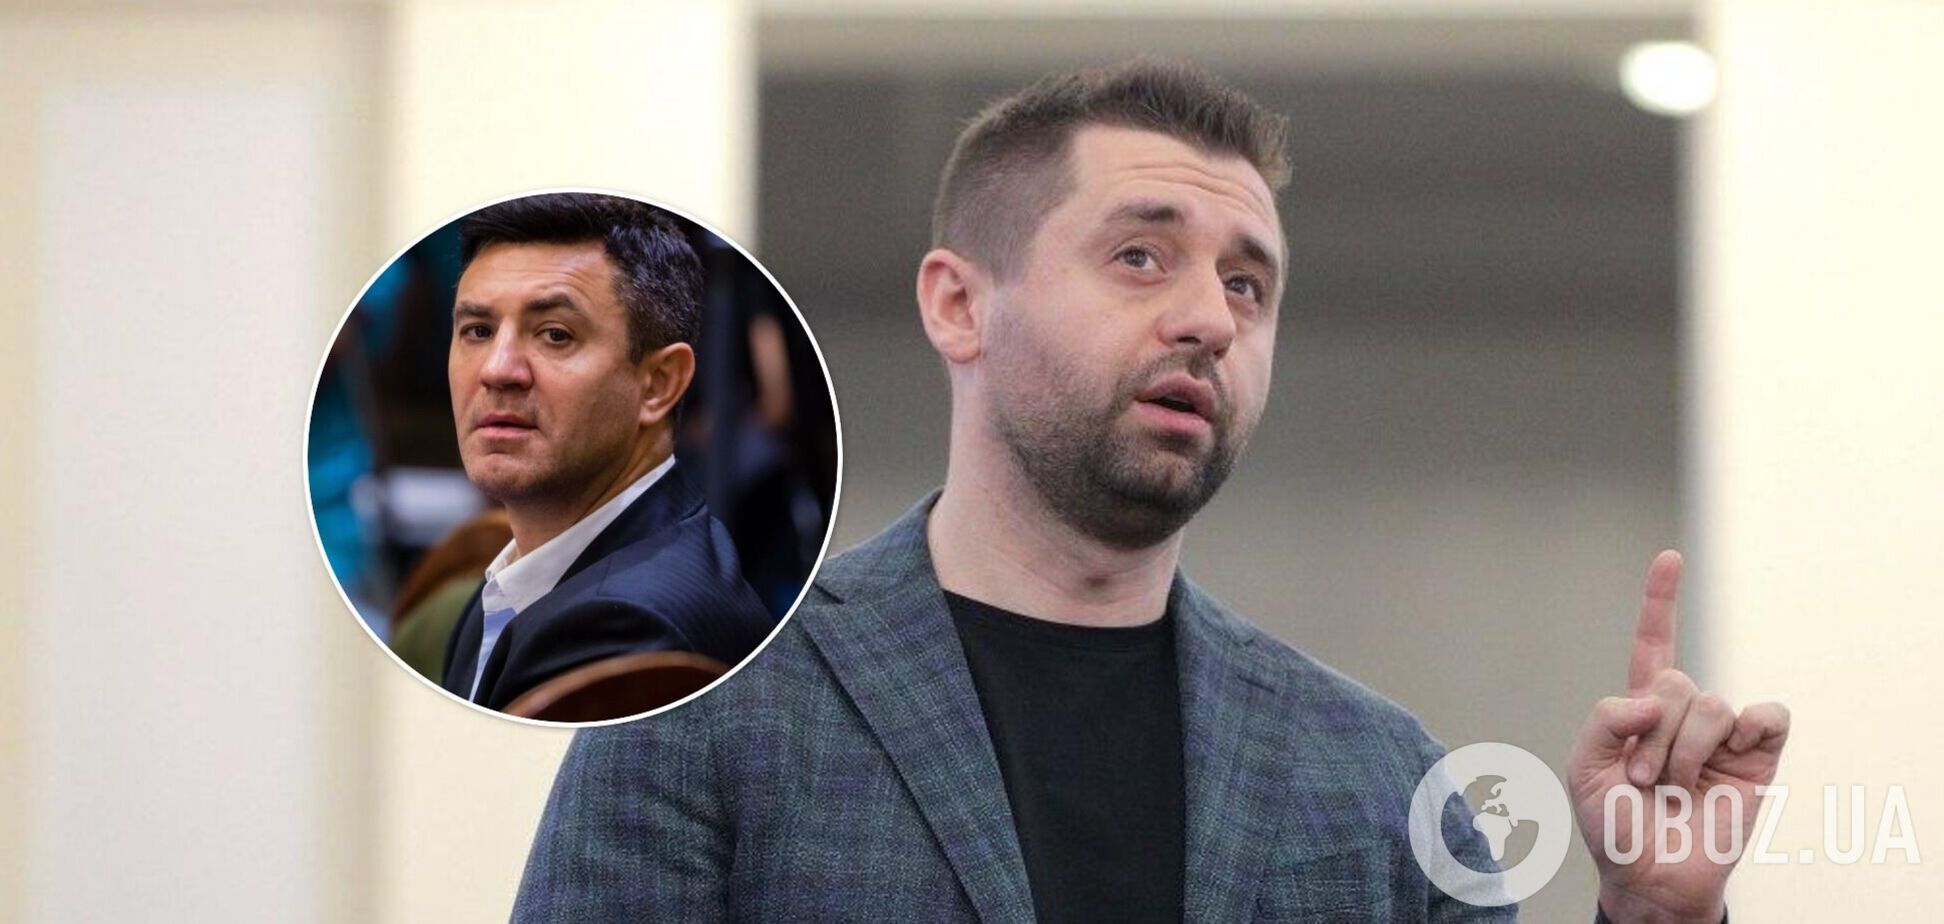 Арахамия 'зарезал' Тищенко на избирательном участке: всплыли подробности 'спецоперации слуг'